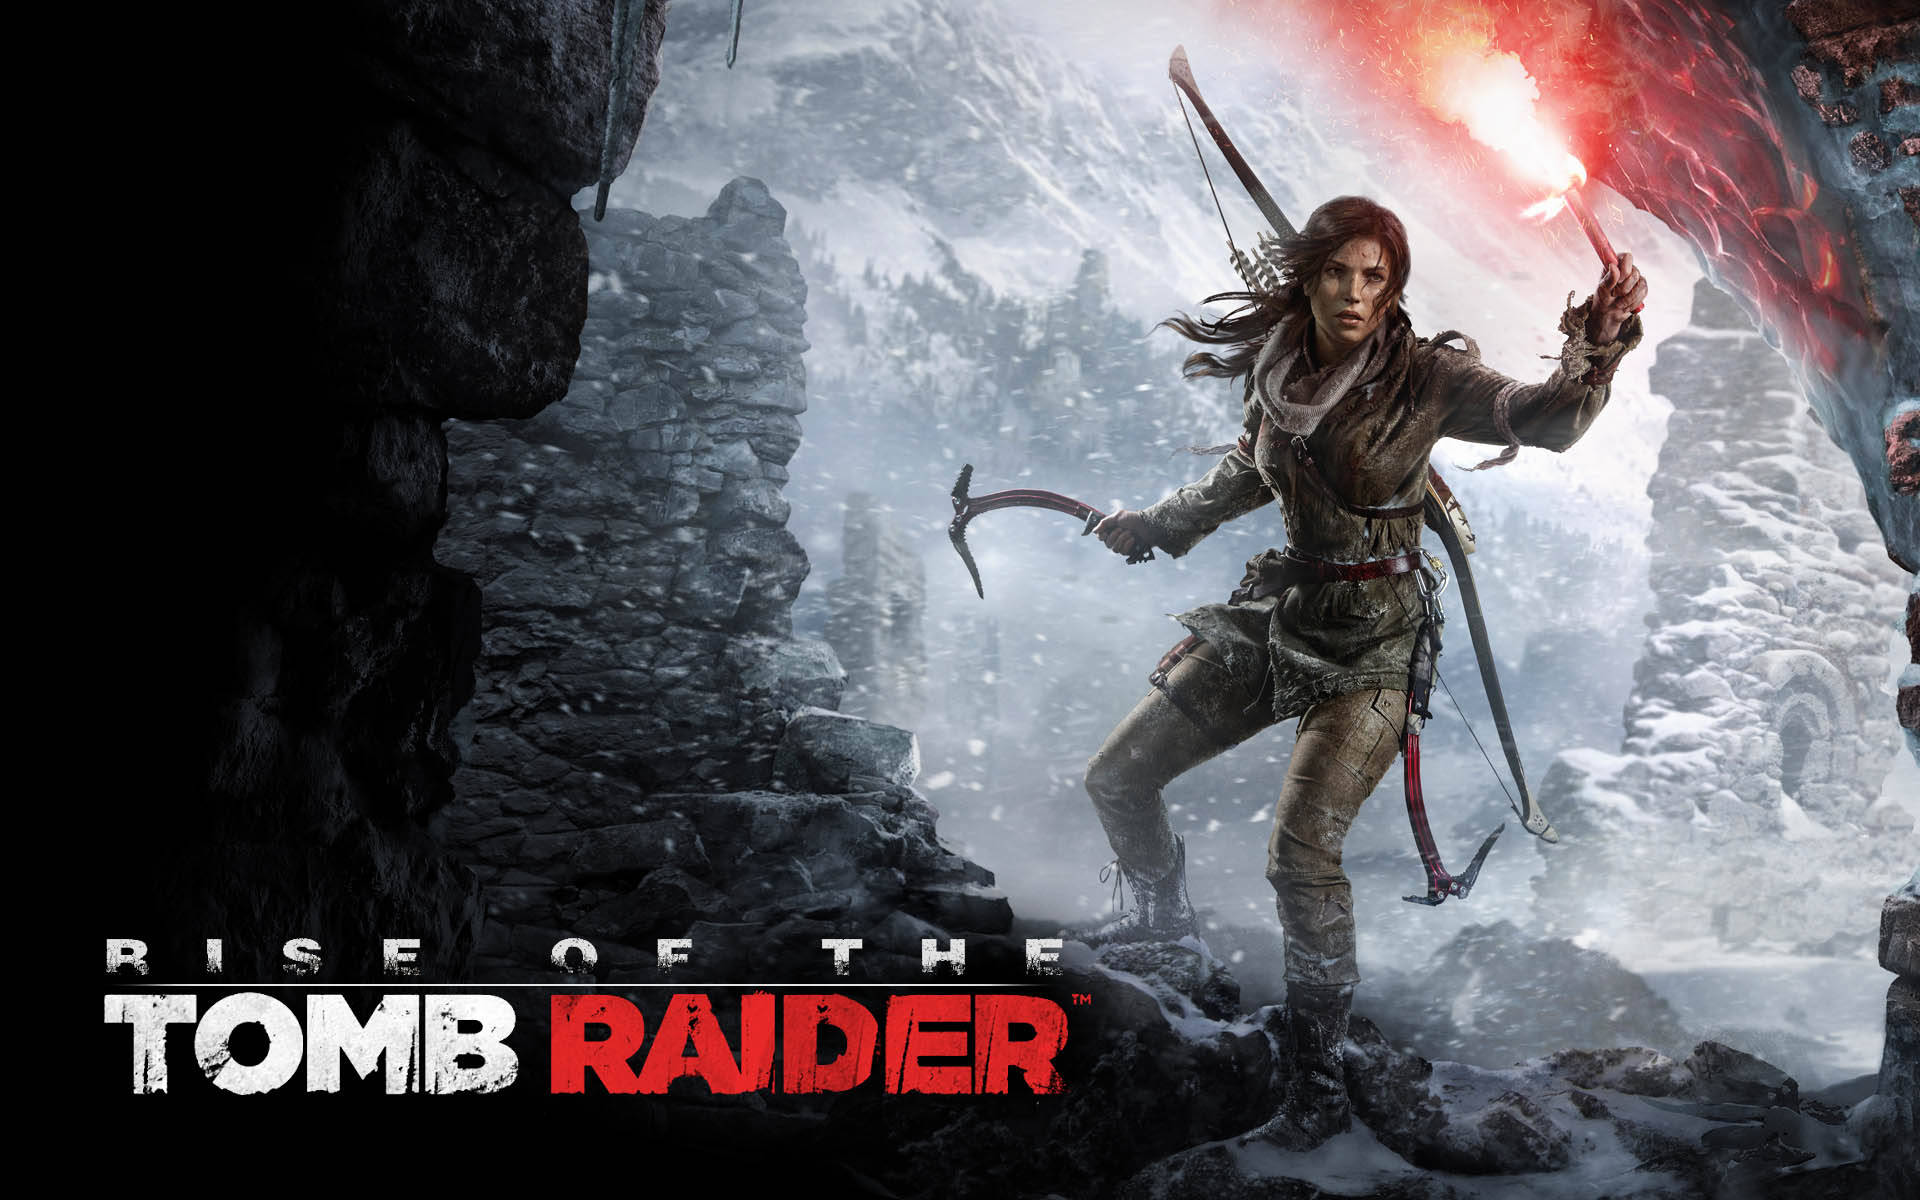 Laracroft, Den Ikoniska Tomb Raider - Bilddesktop Eller Mobilbakgrund. Wallpaper